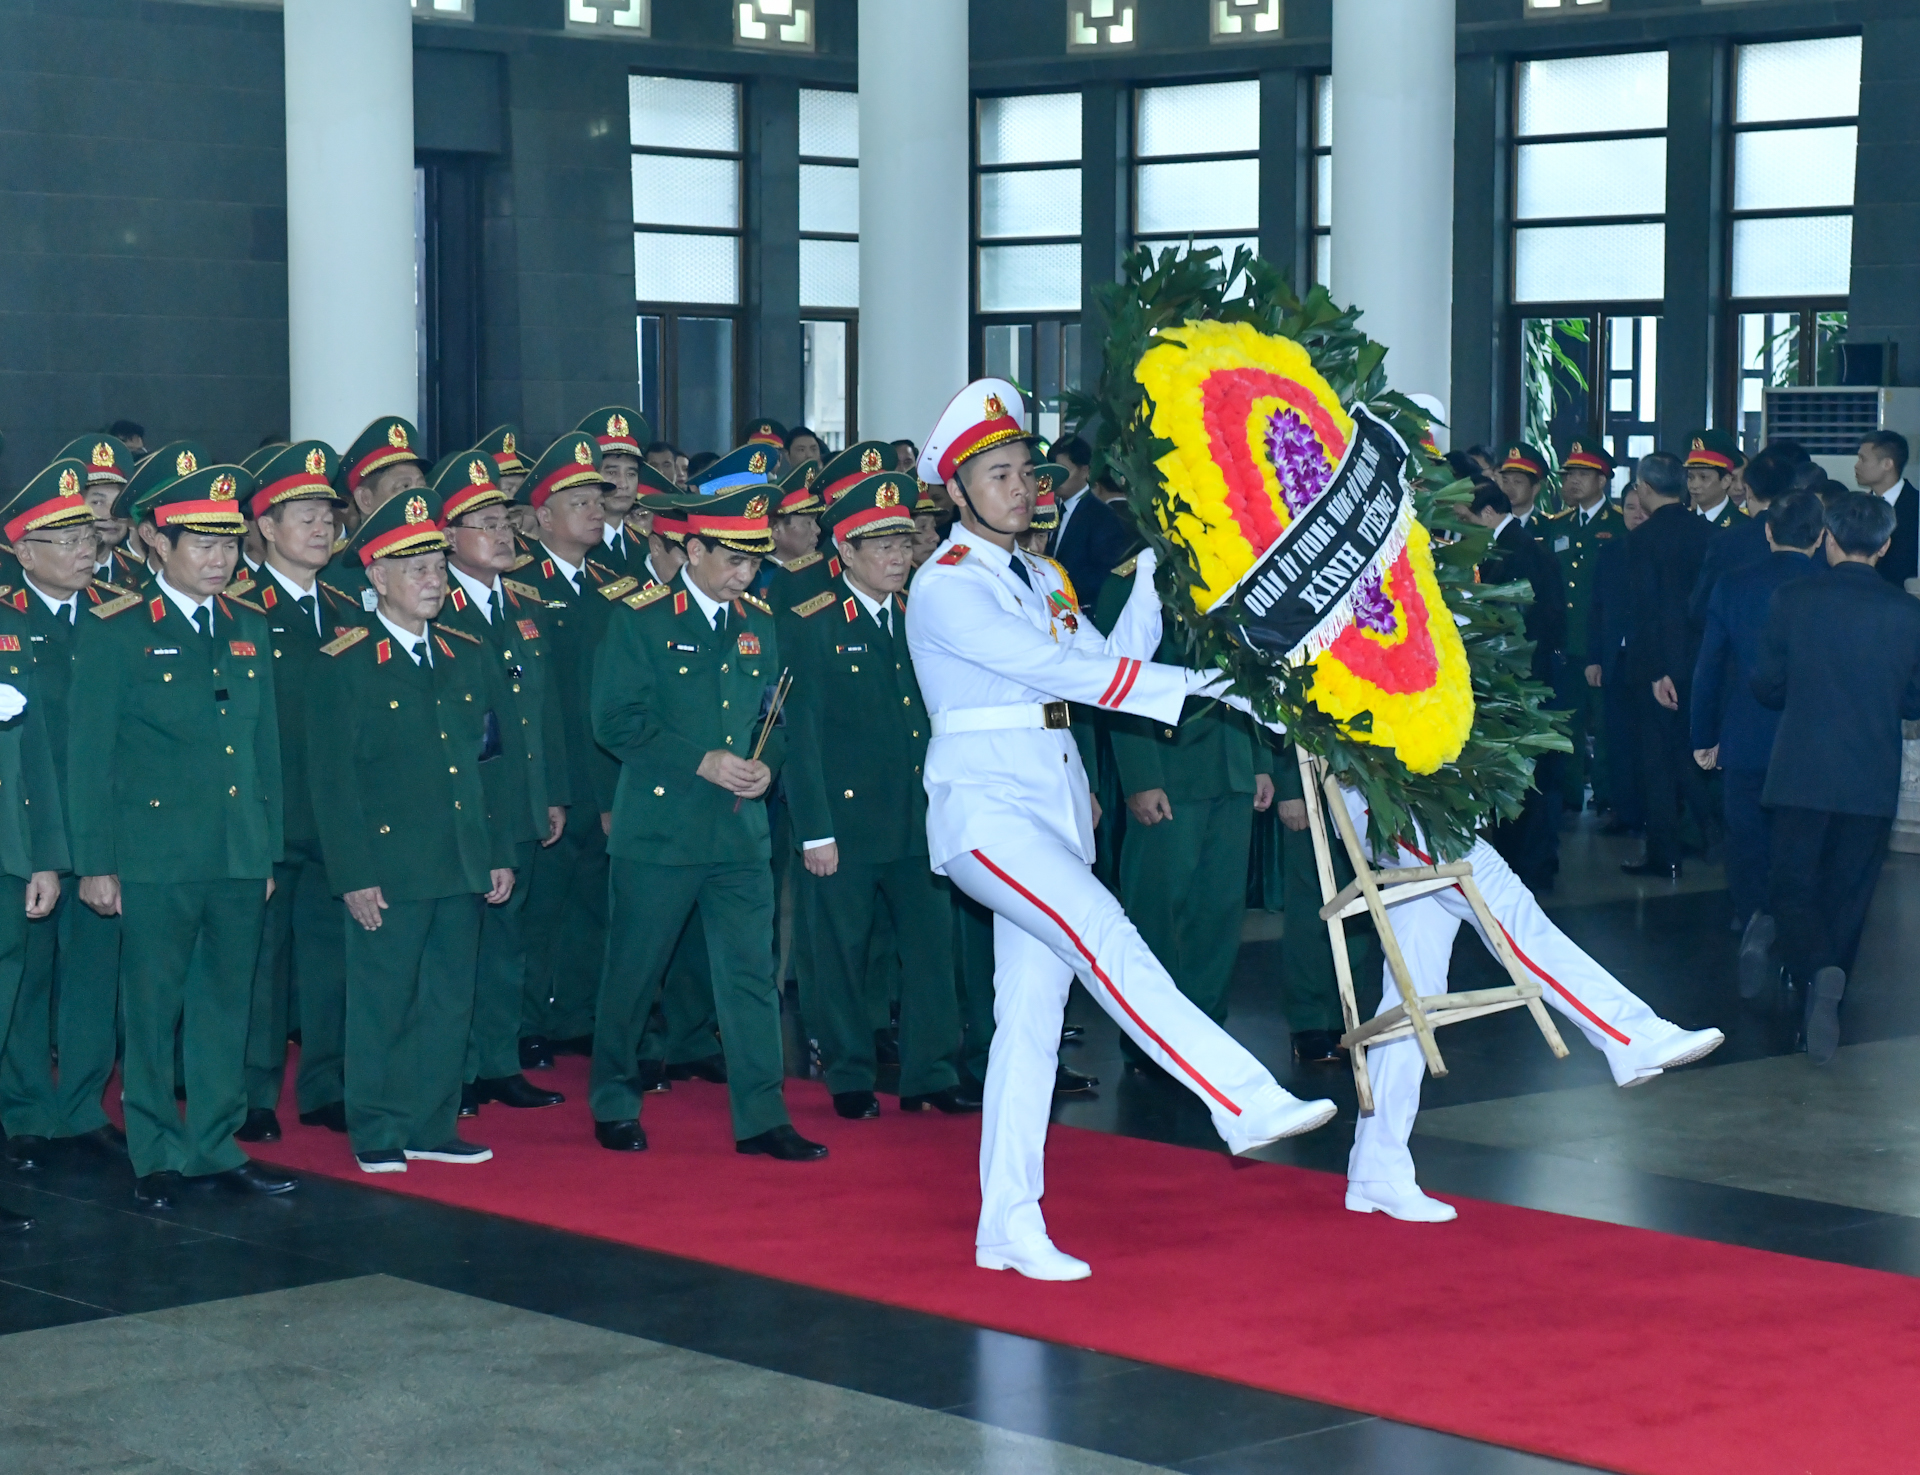 Đoàn Quân ủy Trung ương, Bộ Quốc phòng do Đại tướng Phan Văn Giang, Phó Bí thư Quân ủy Trung ương, Bộ trưởng Quốc phòng làm trưởng đoàn vào viếng.